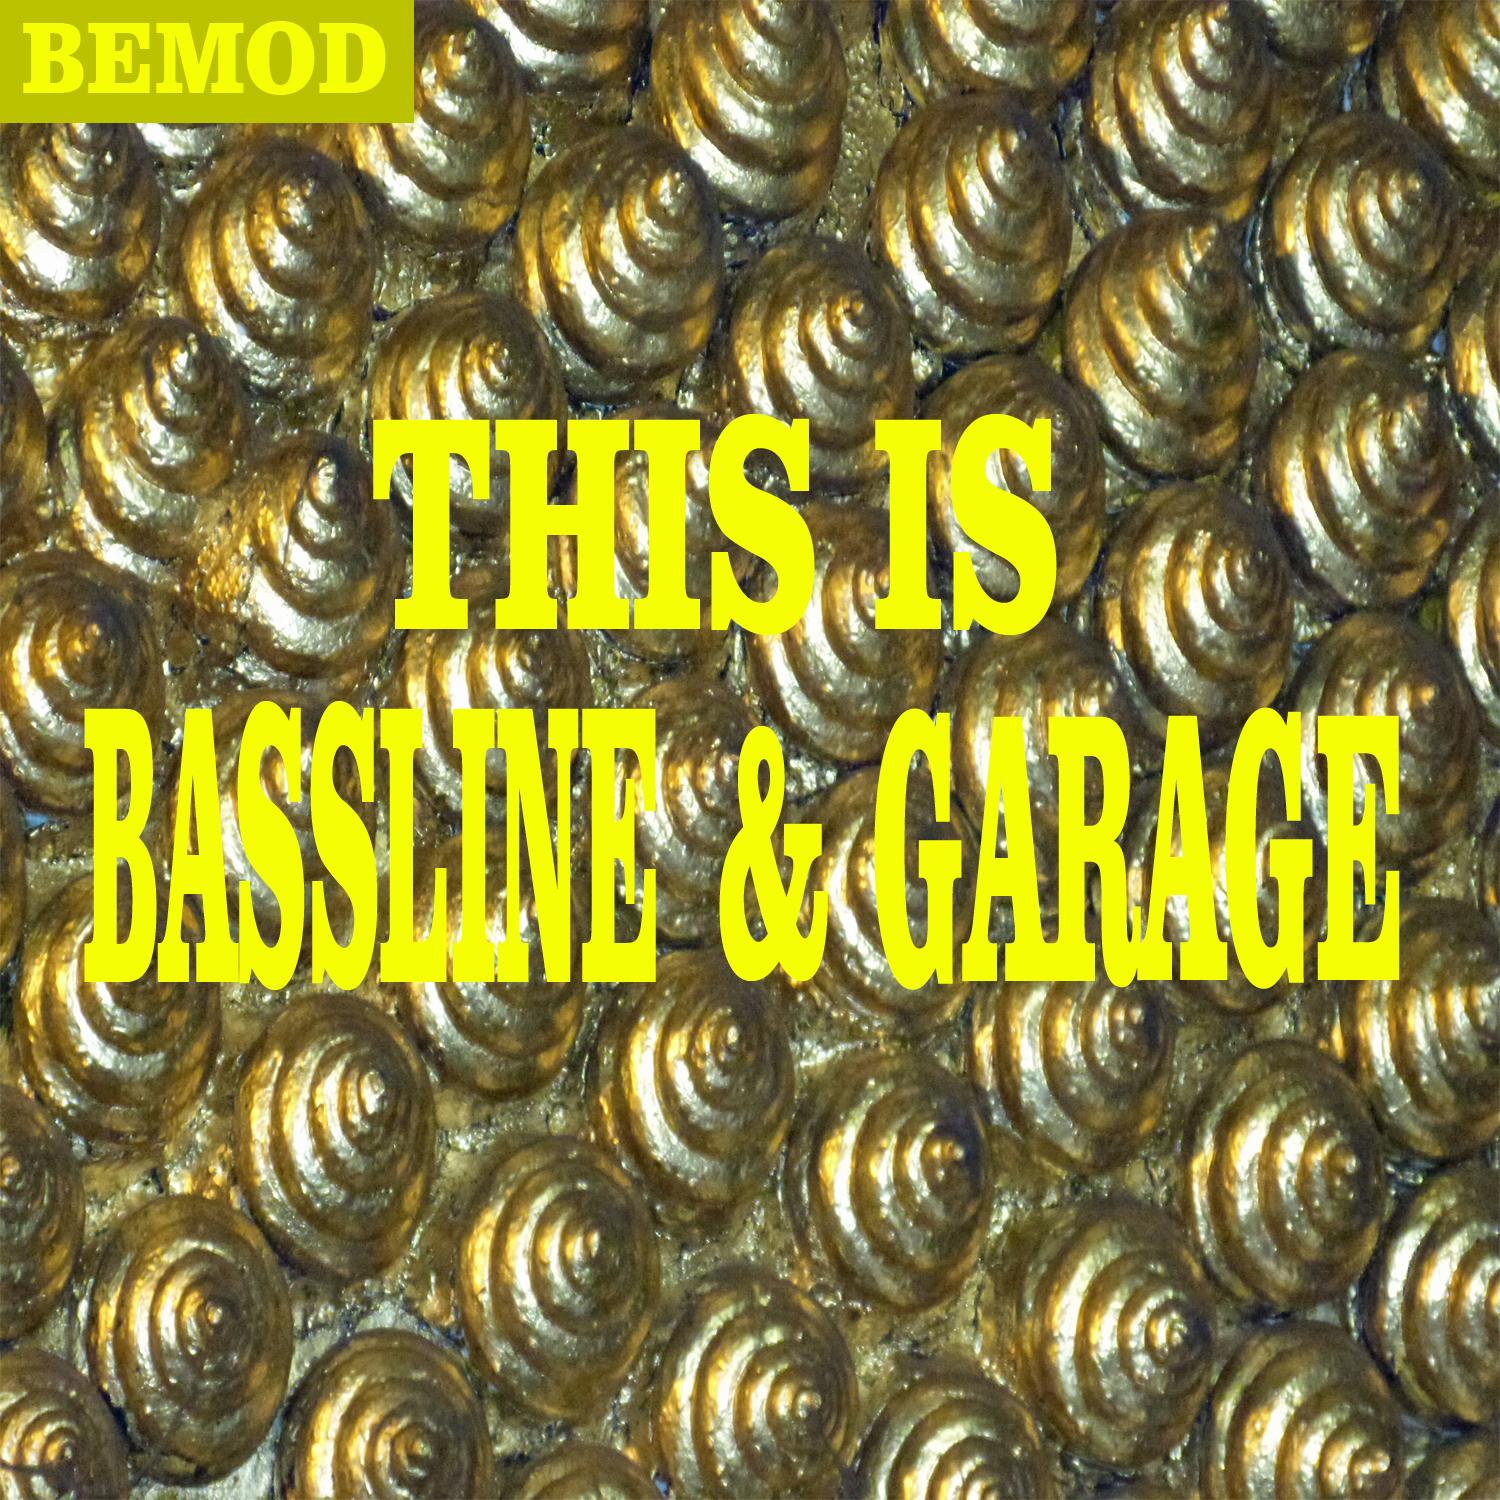 This Is Bassline & Garage